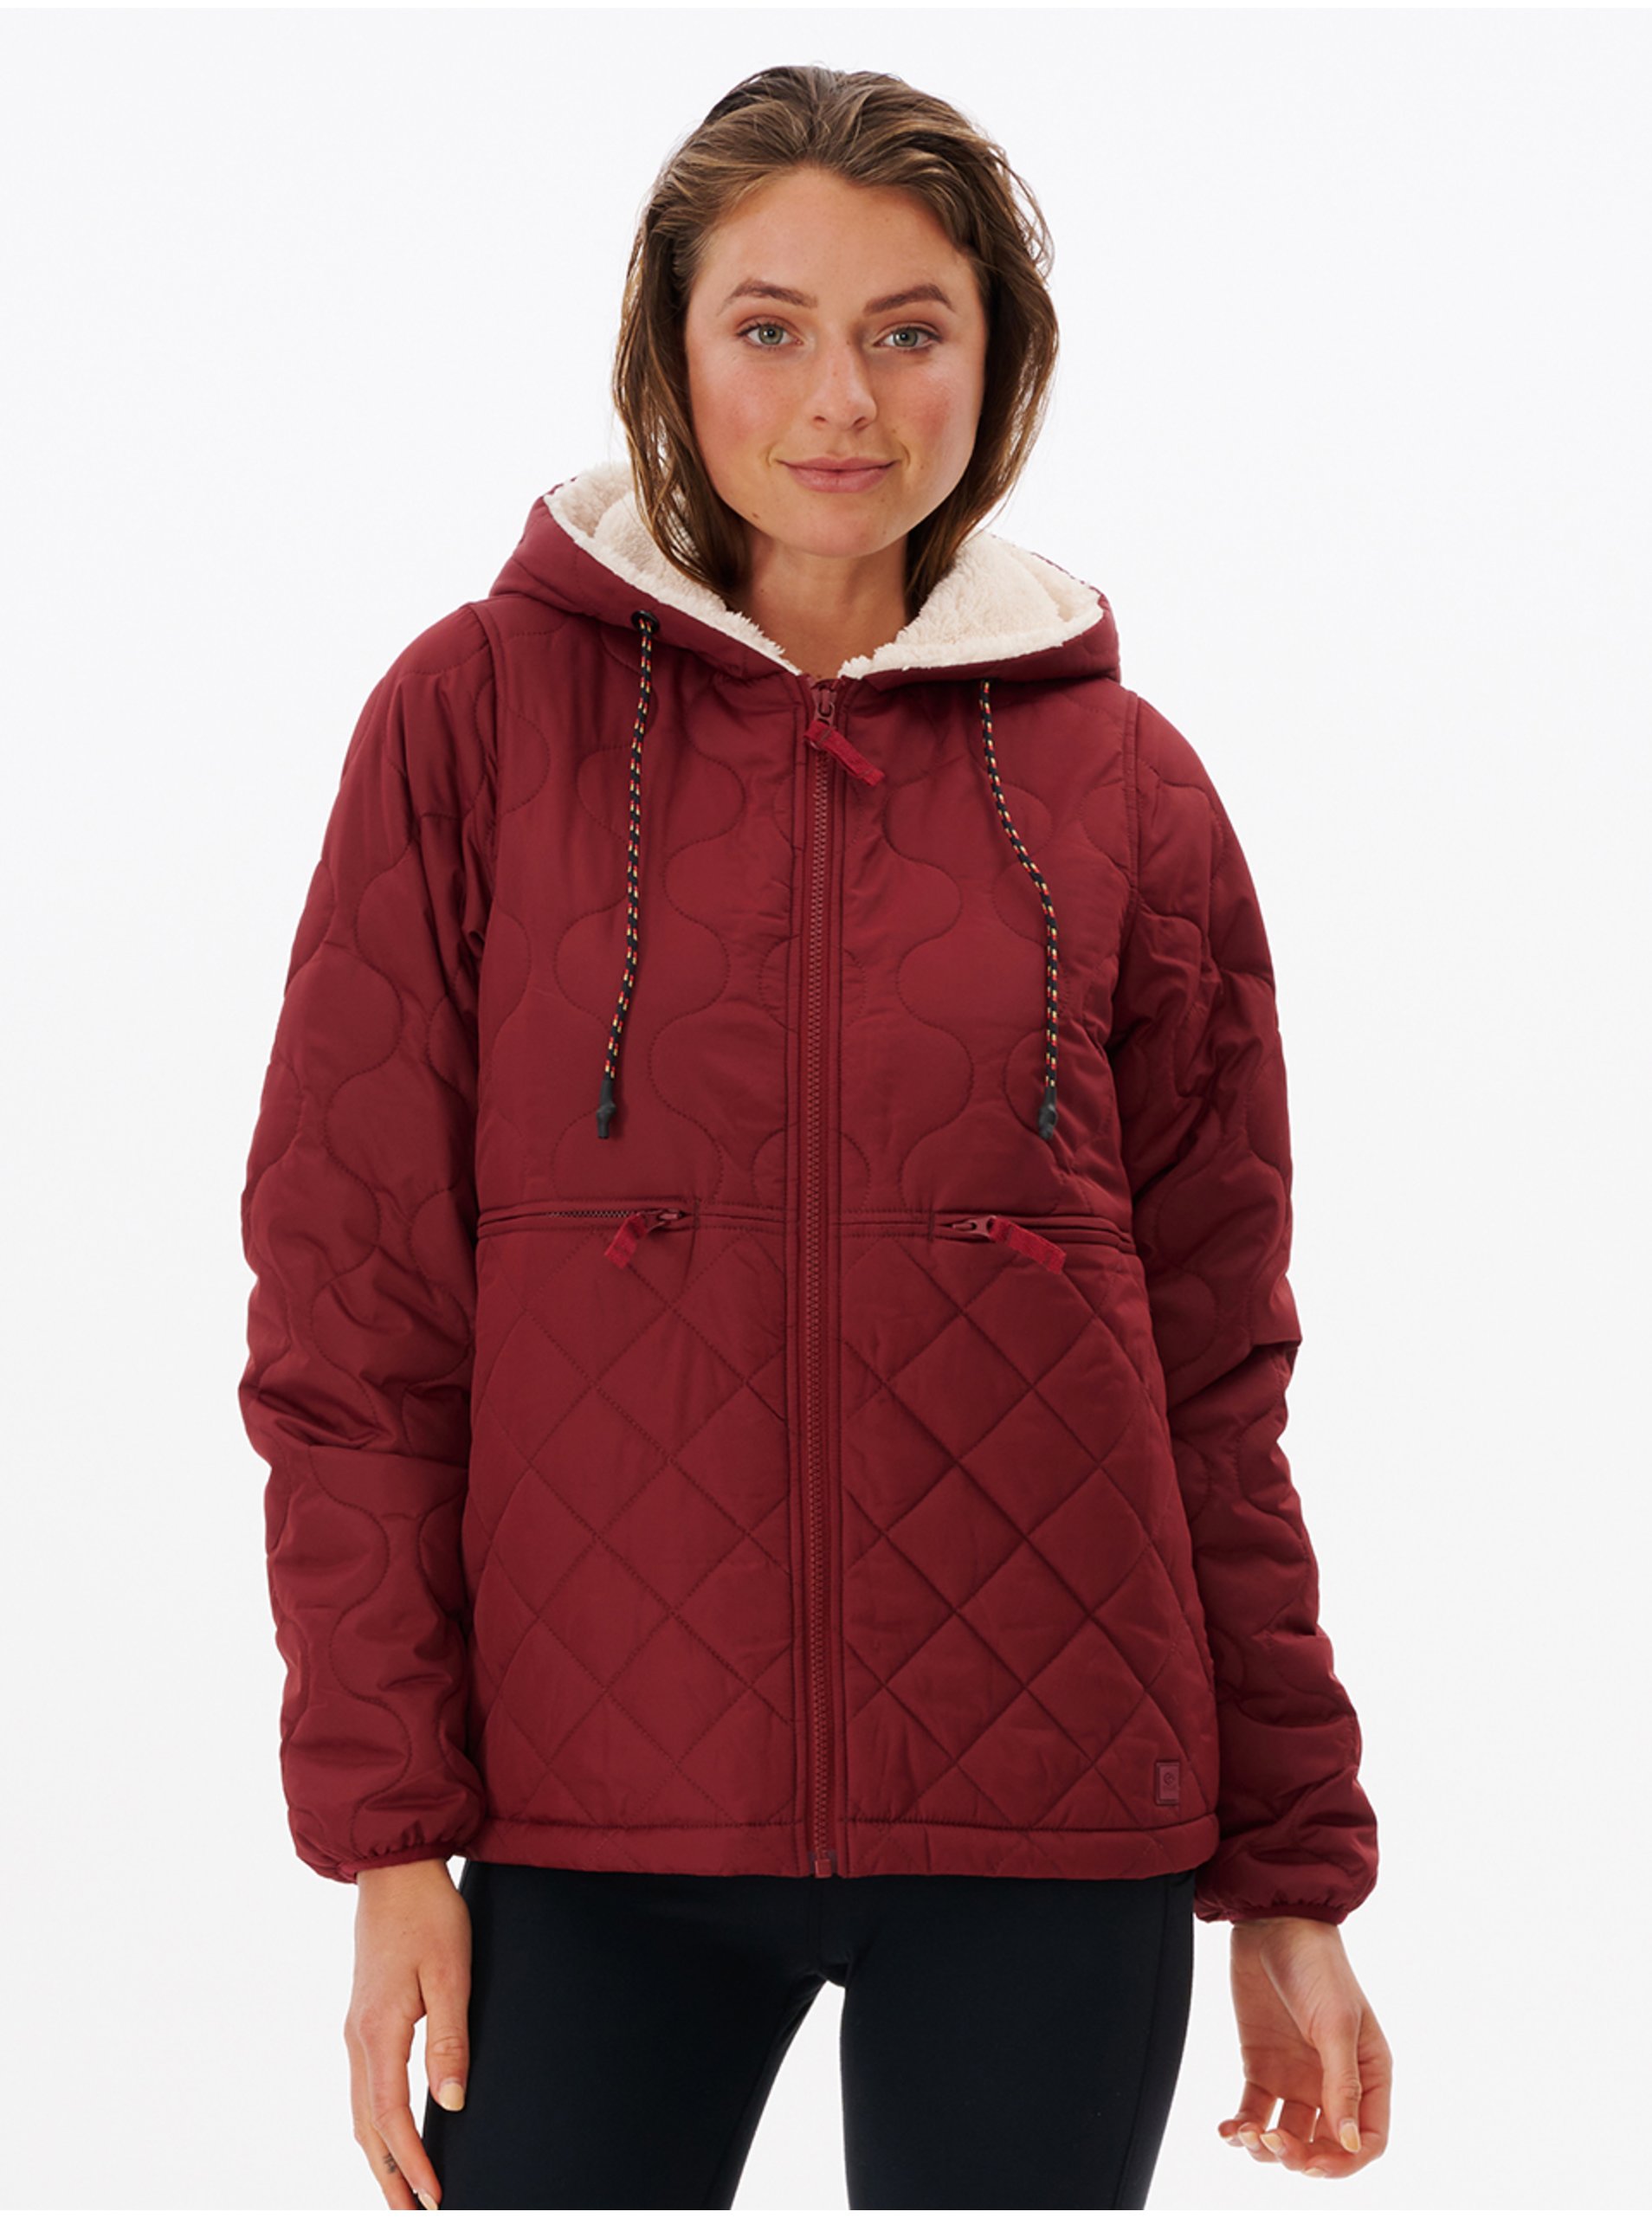 E-shop Vínová dámská prošívaná zimní bunda s kapucí Rip Curl